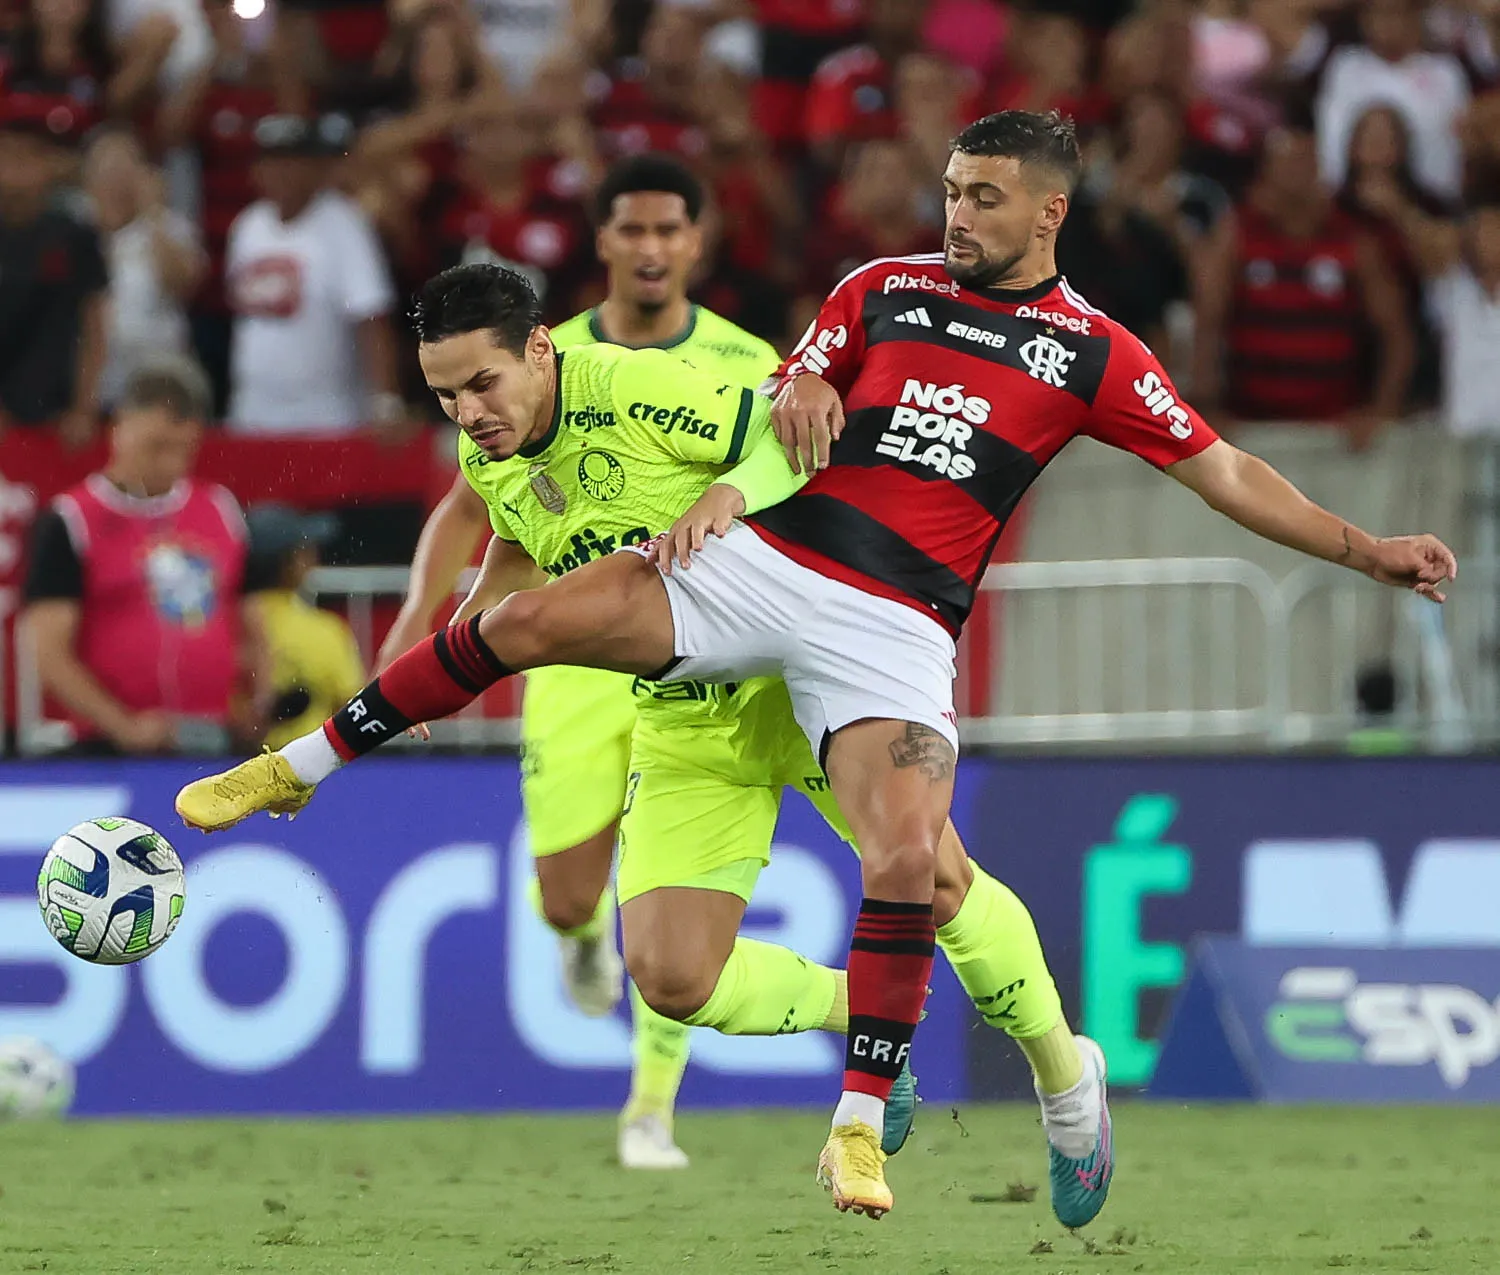 Atlético atropela o Flamengo no Maracanã e entra de vez na briga